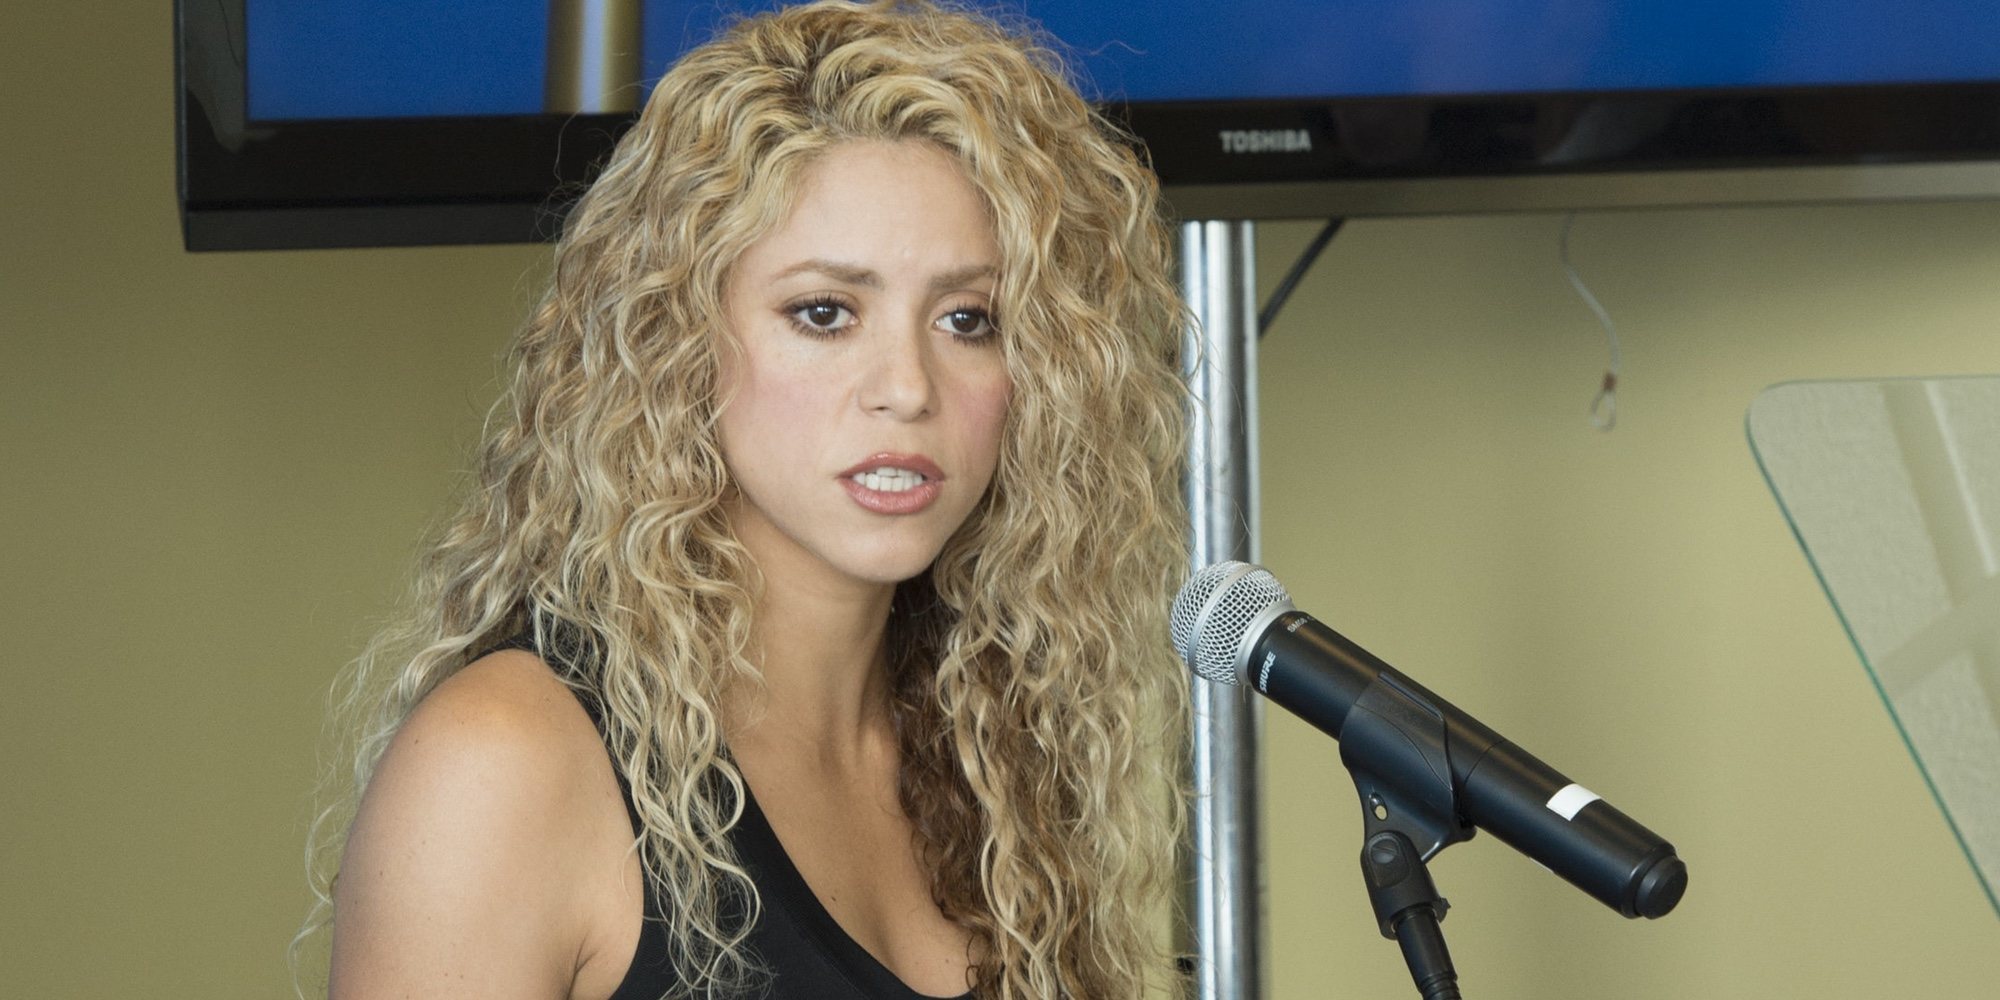 Shakira podría tener que hacer frente a una causa penal por un supuesto fraude de 14,5 millones a Hacienda